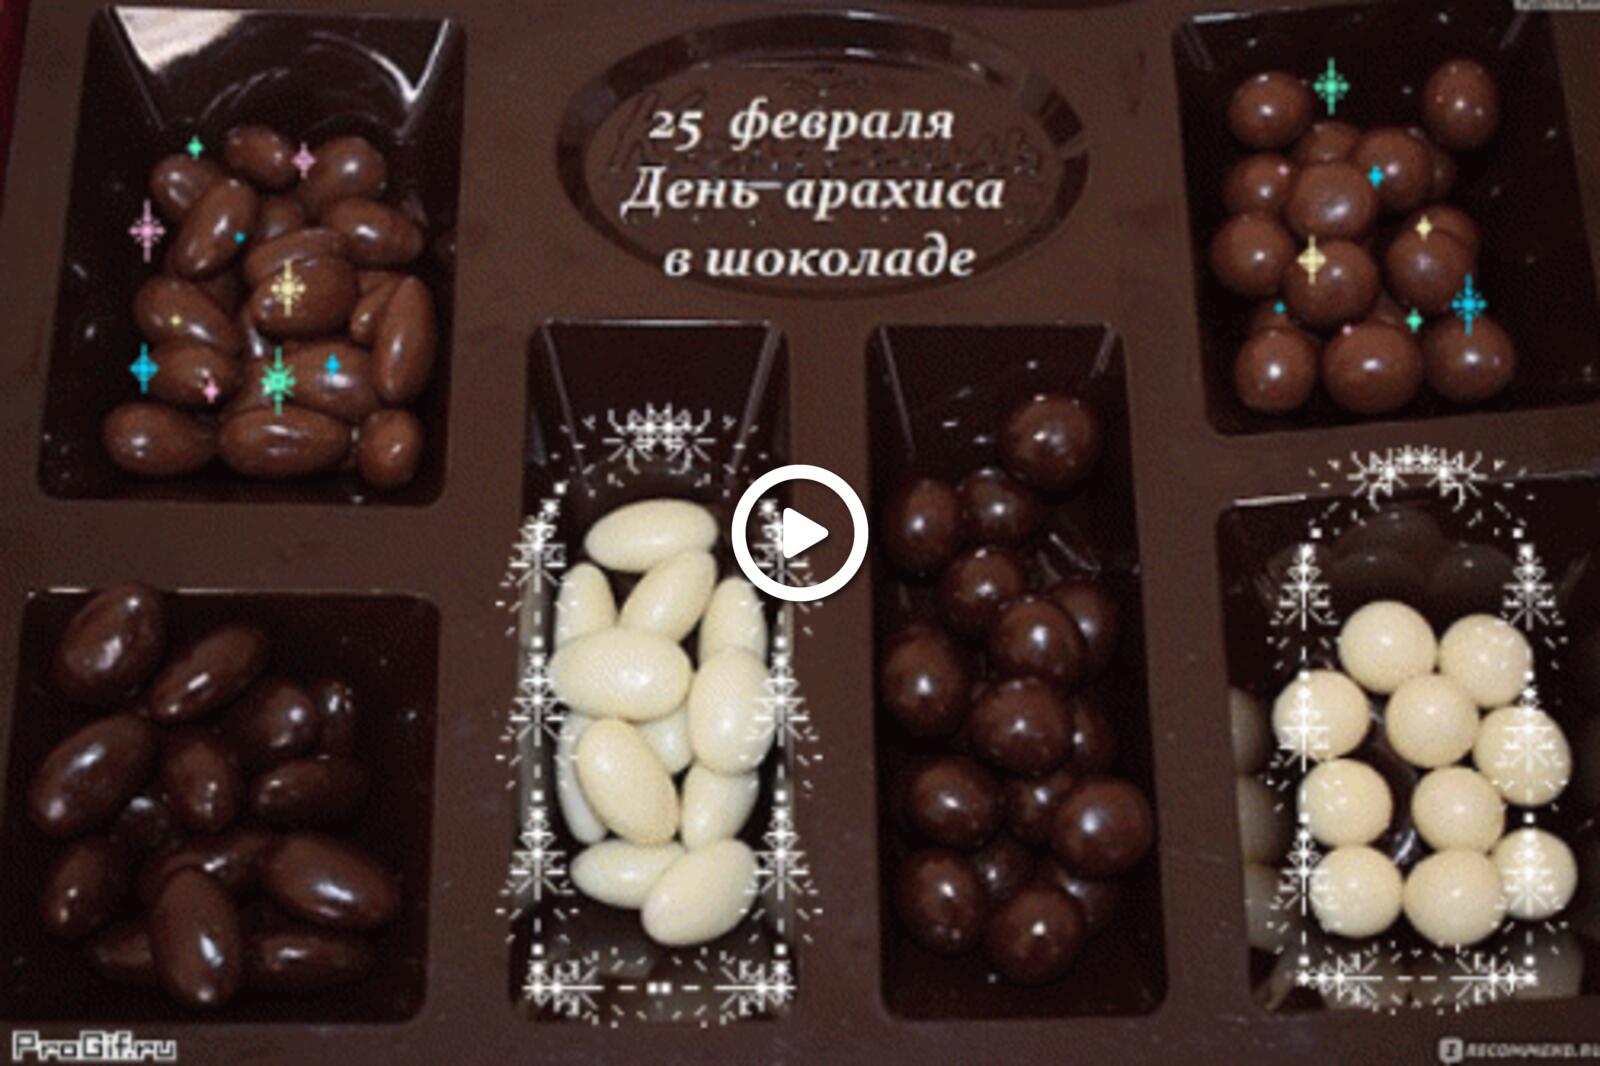 Открытка на тему арахис текст день арахиса в шоколаде бесплатно